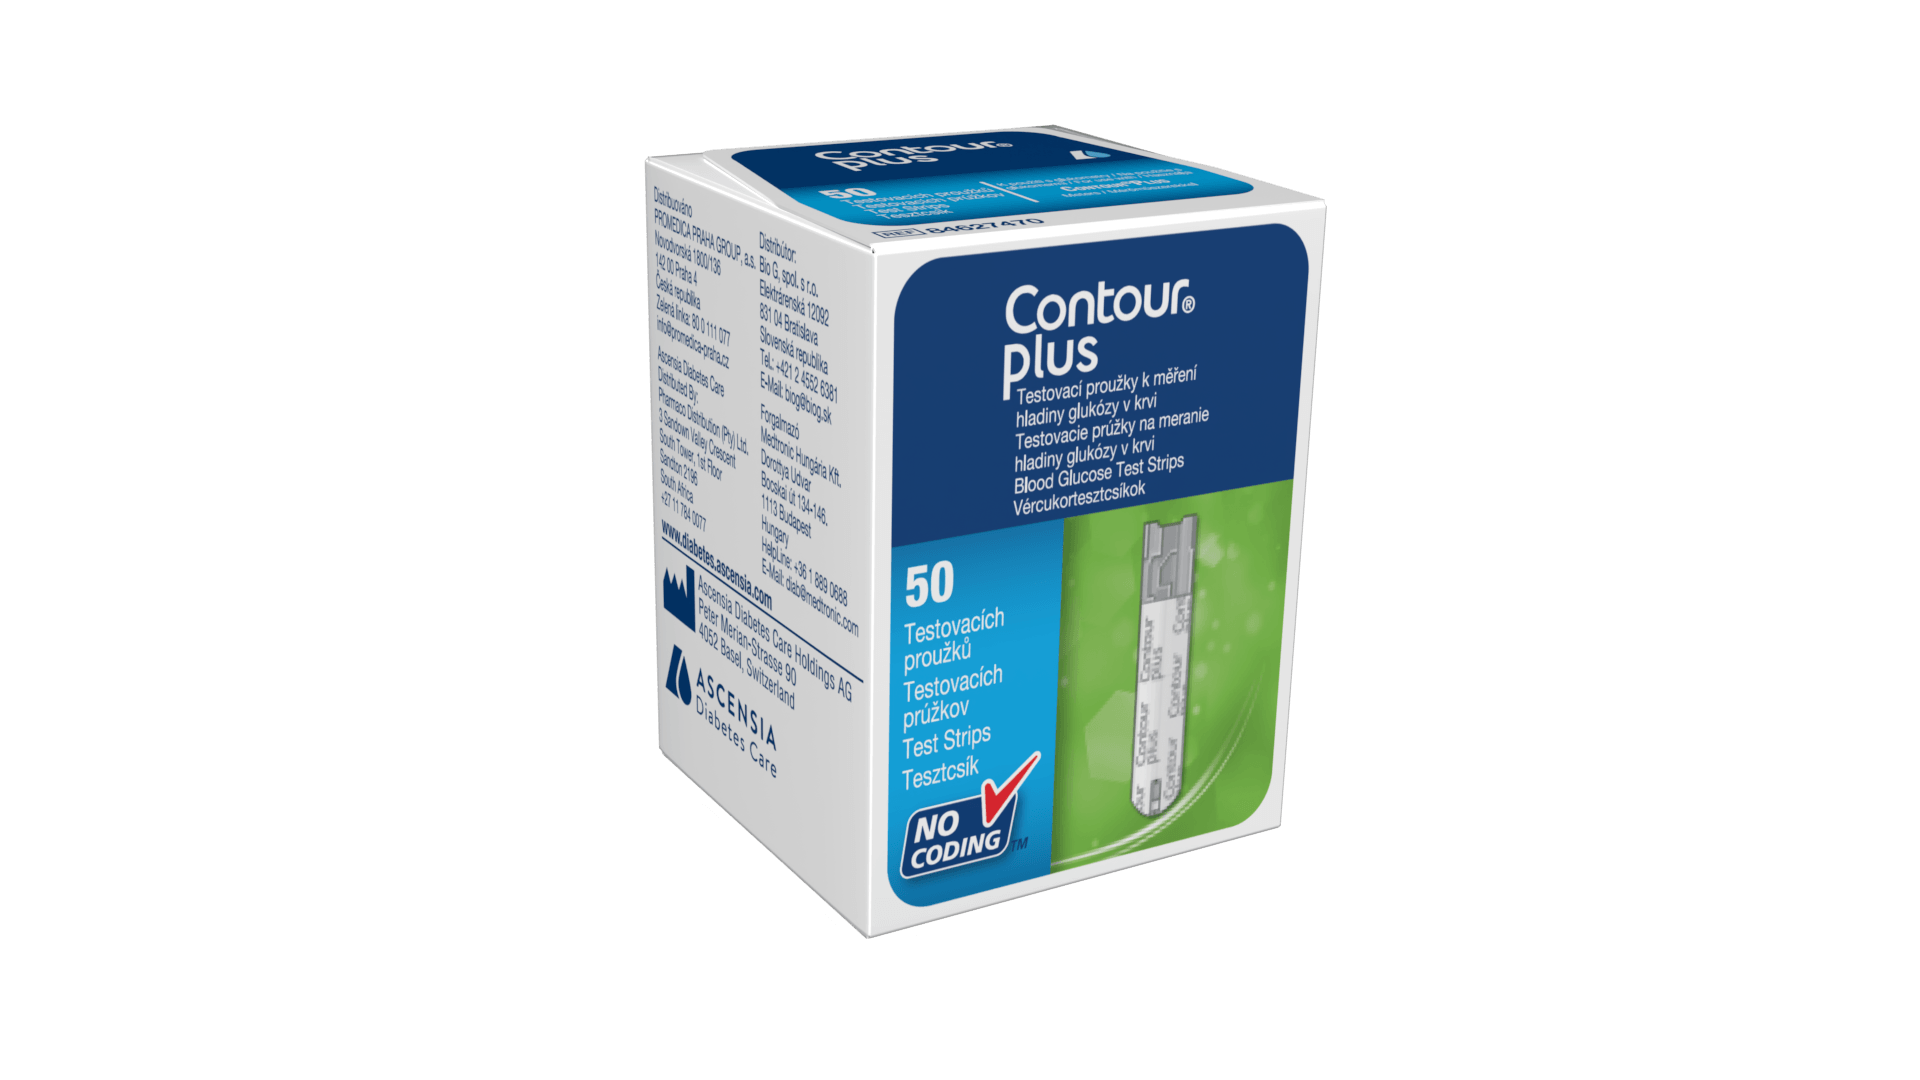 Contour Plus Strips 50's - Pharmaco